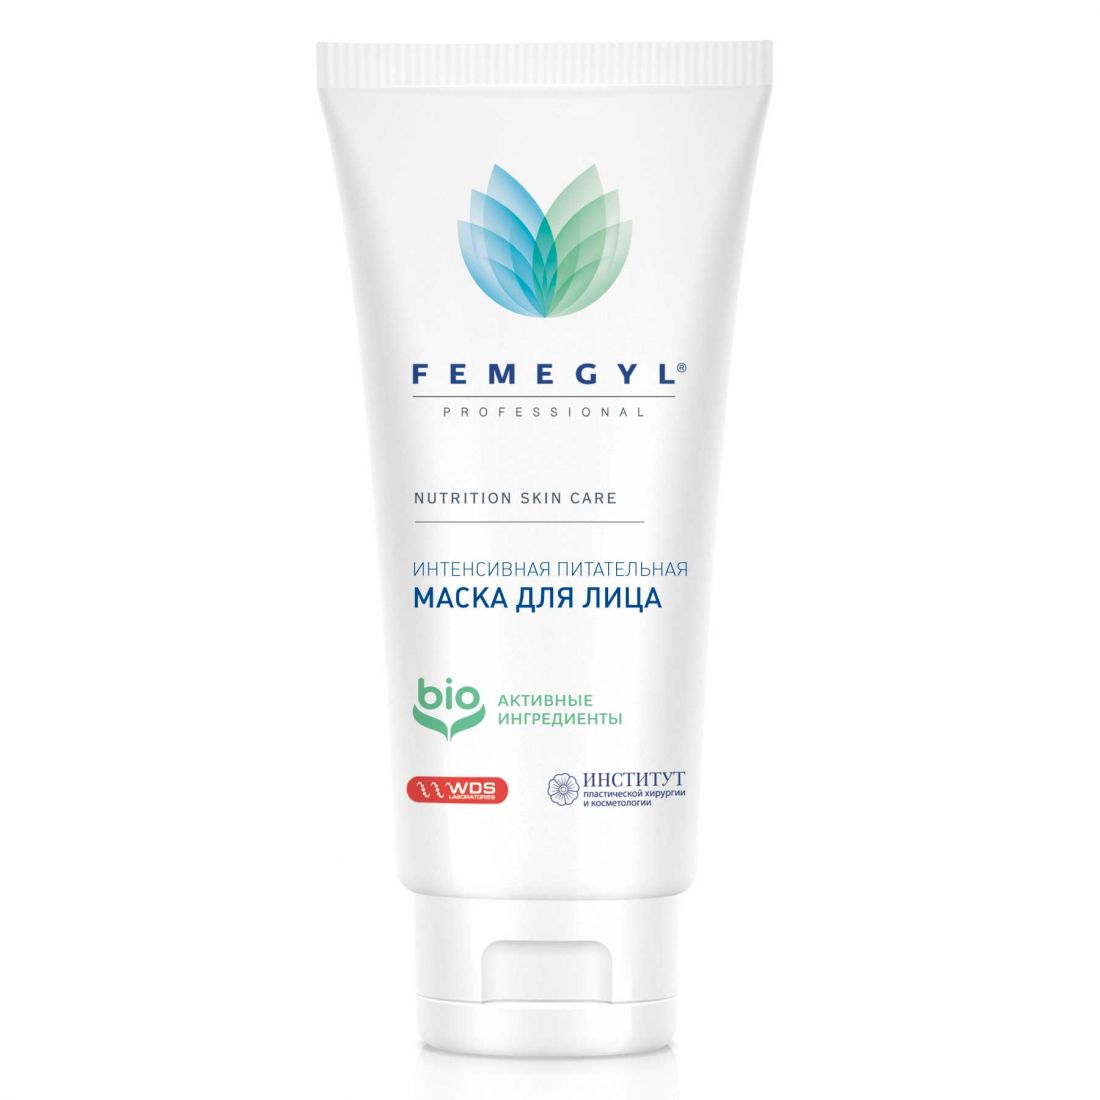 Femegyl Интенсивная питательная маска для лица, 30 мл (Фемеджил, Femegyl professional)